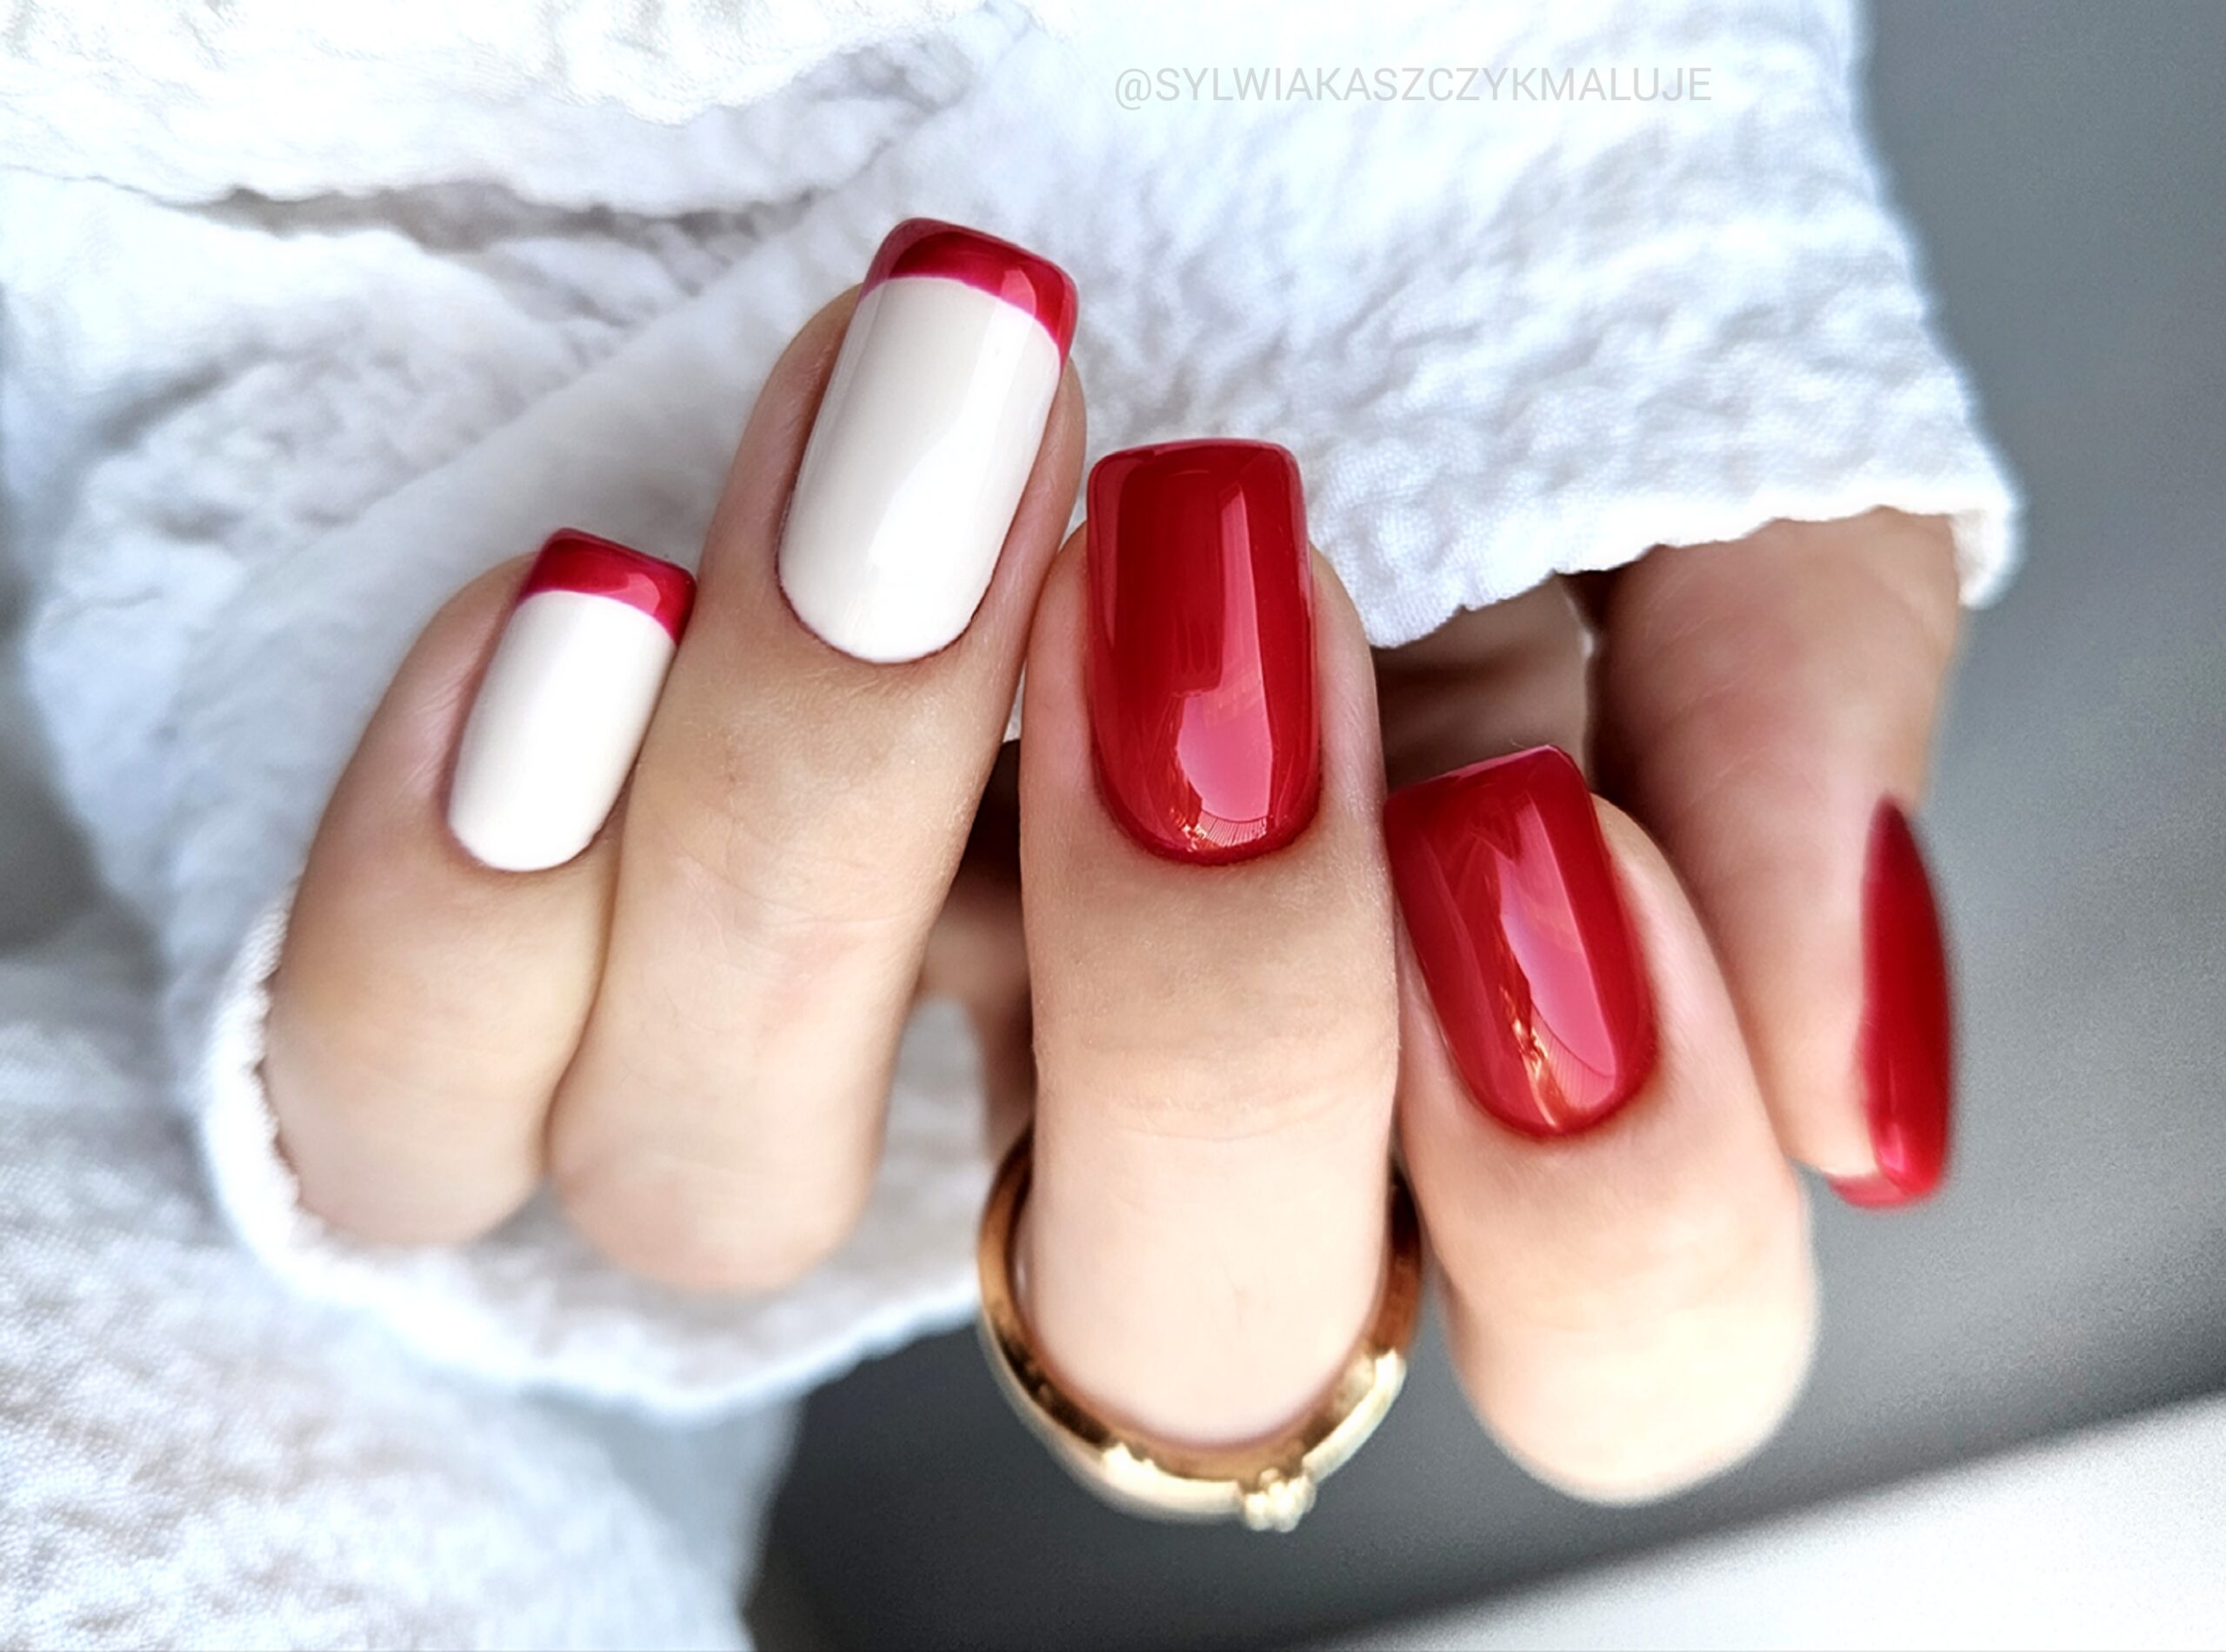 czerwony manicure